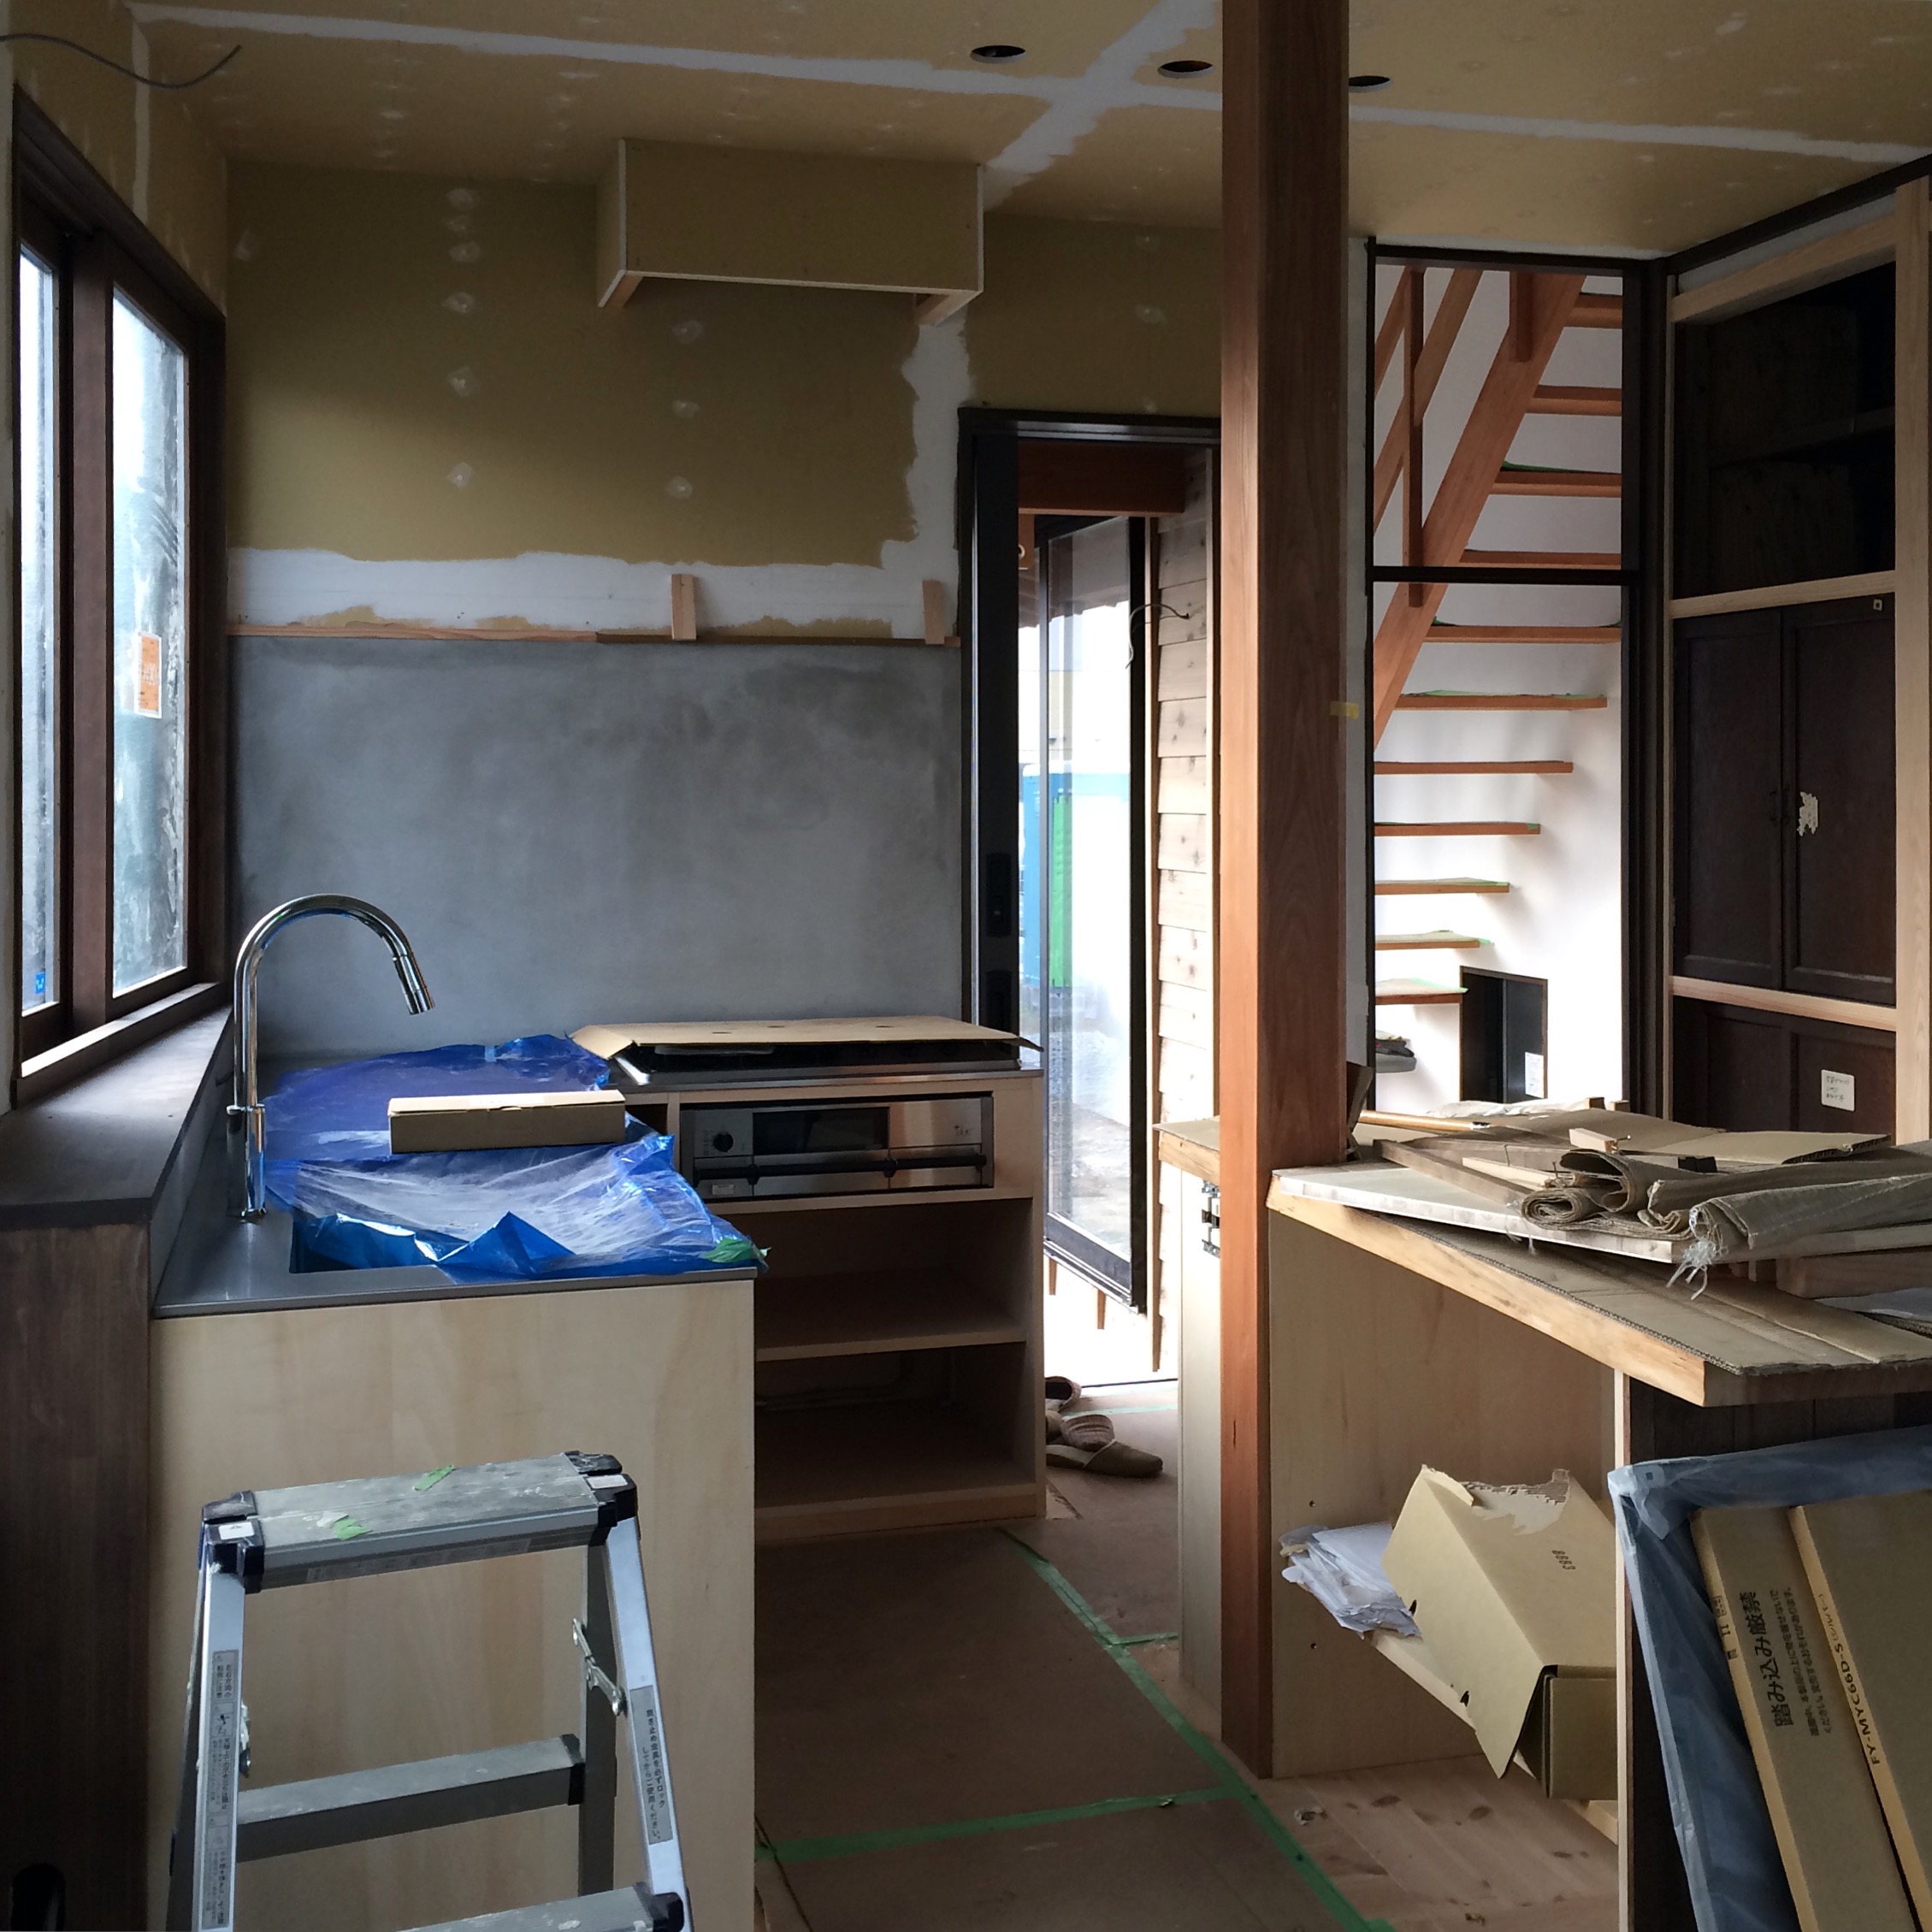 『台所』栃木市のヴィンテージハウス